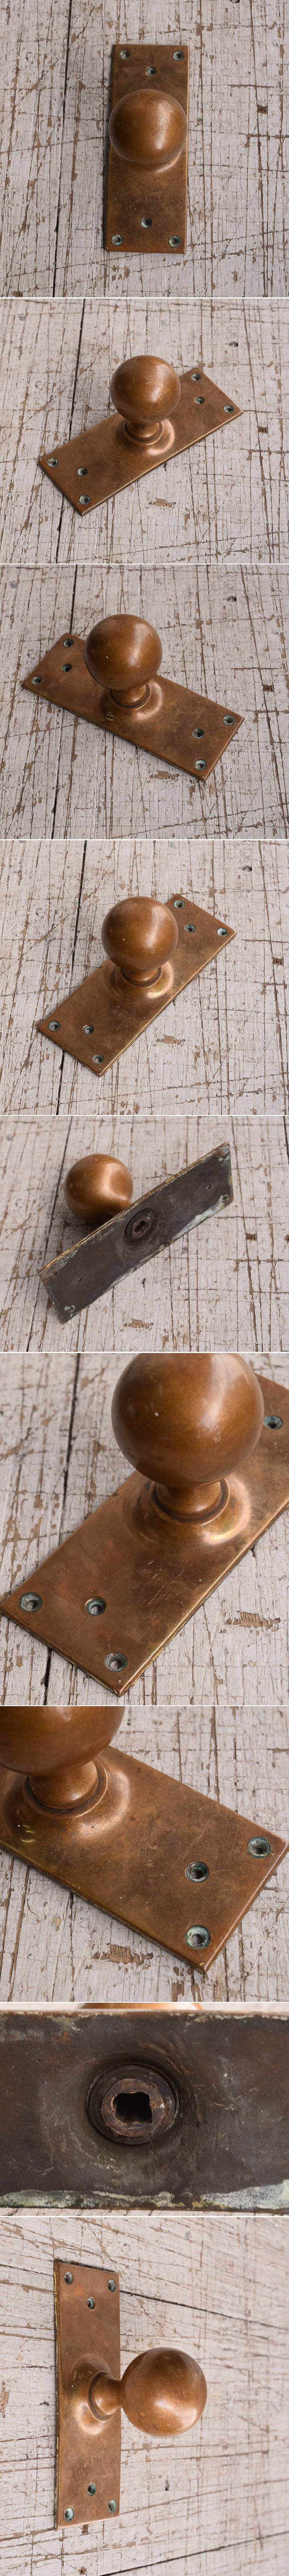 イギリス アンティーク 真鍮製 ドアノブ 建具金物 11963